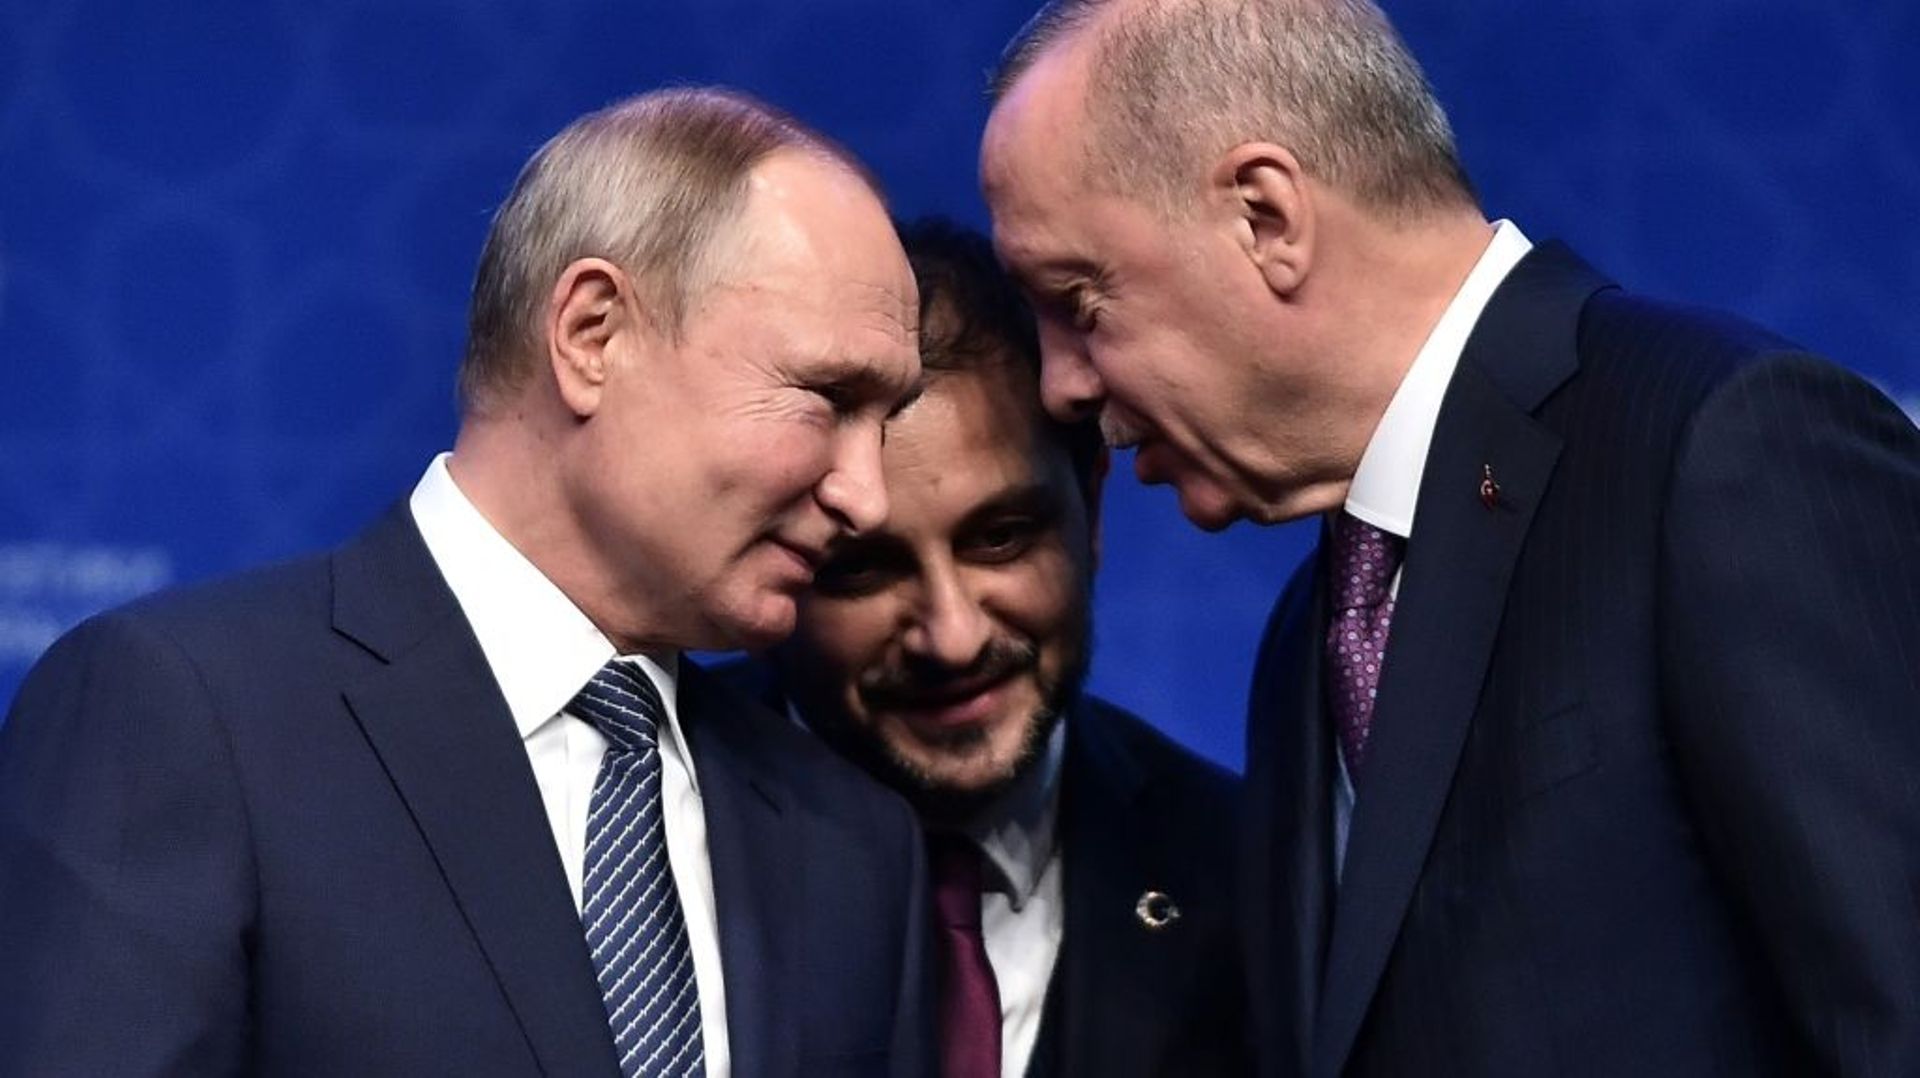 Le président turc Recep Tayyip Erdogan "est quelqu'un qui tient ses promesses", jugeait fin 2020 son homologue russe Vladimir Poutine